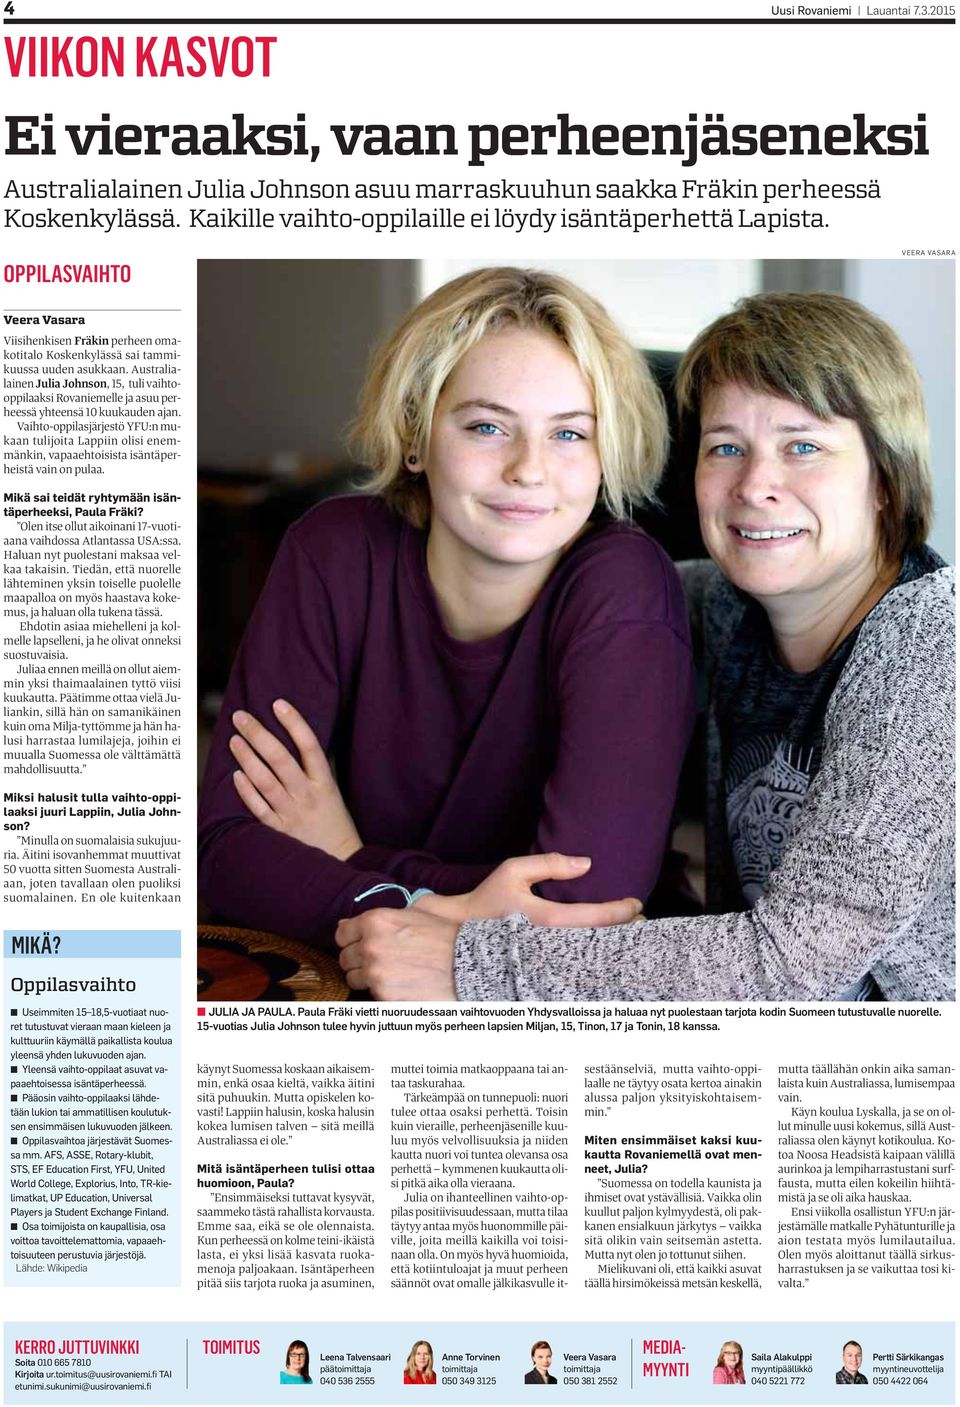 Australialainen Julia Johnson, 15, tuli vaihtooppilaaksi Rovaniemelle ja asuu perheessä yhteensä 10 kuukauden ajan.